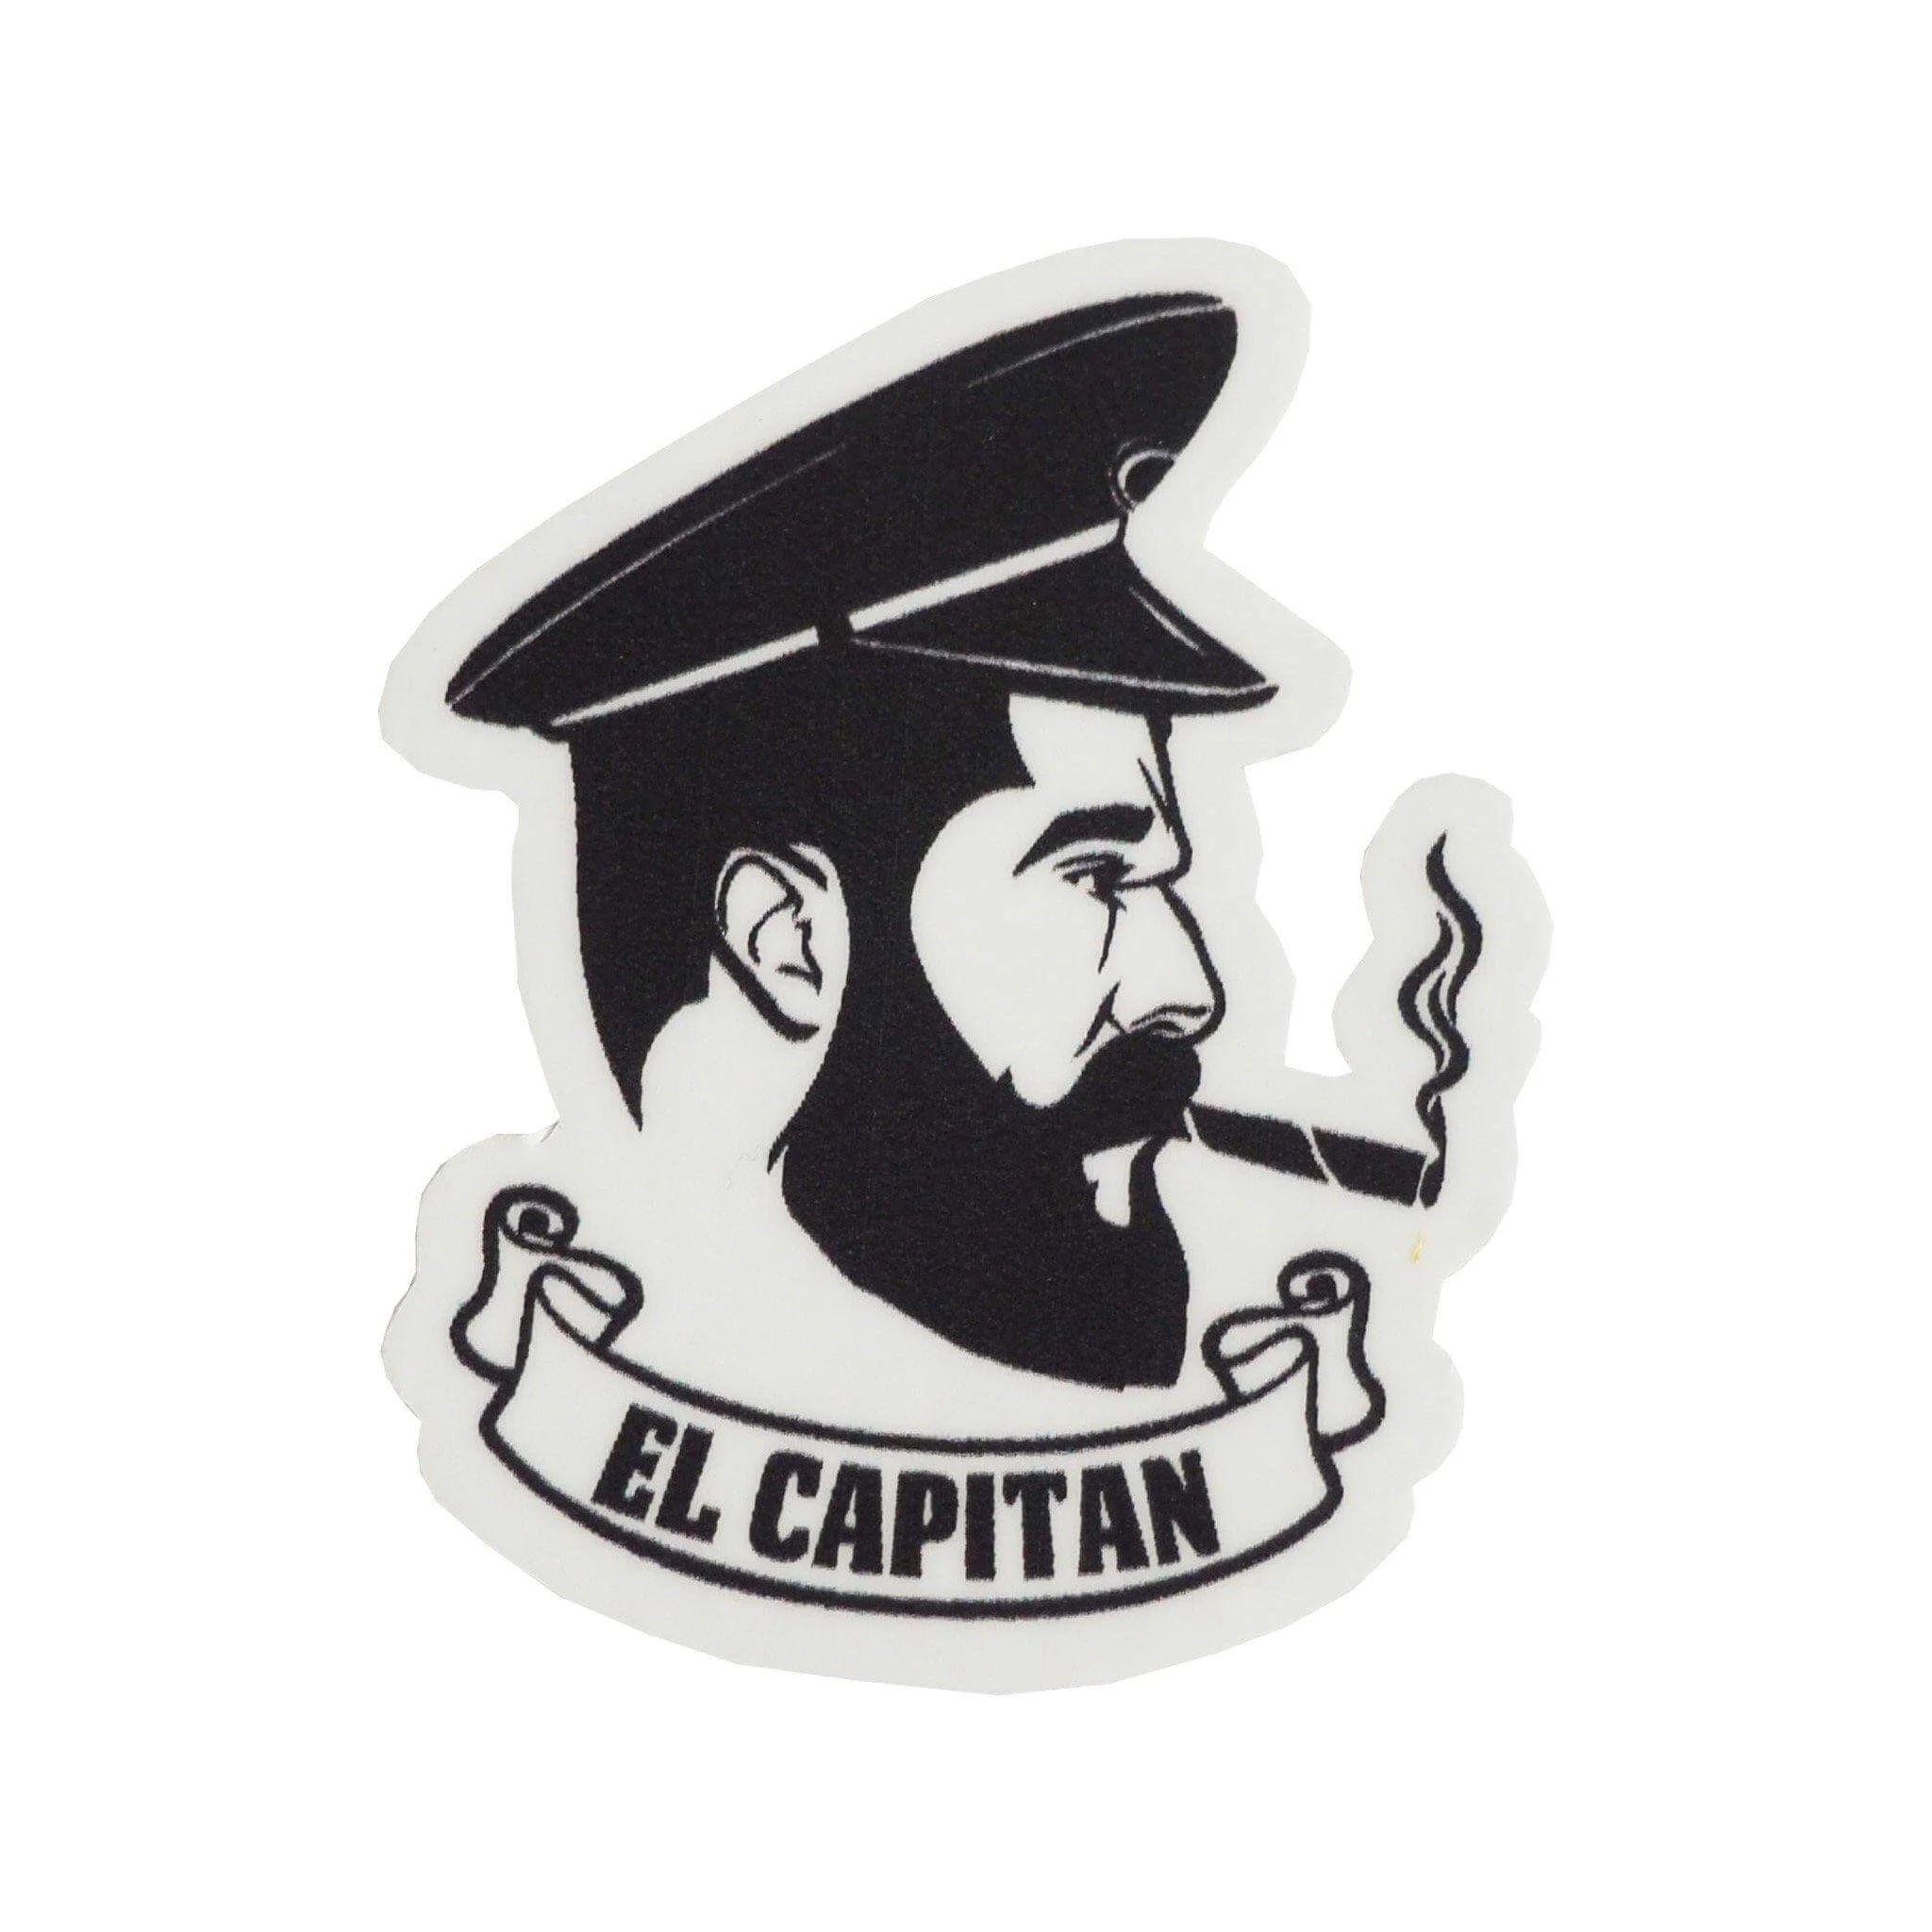 Player eL_Capitanoo avatar